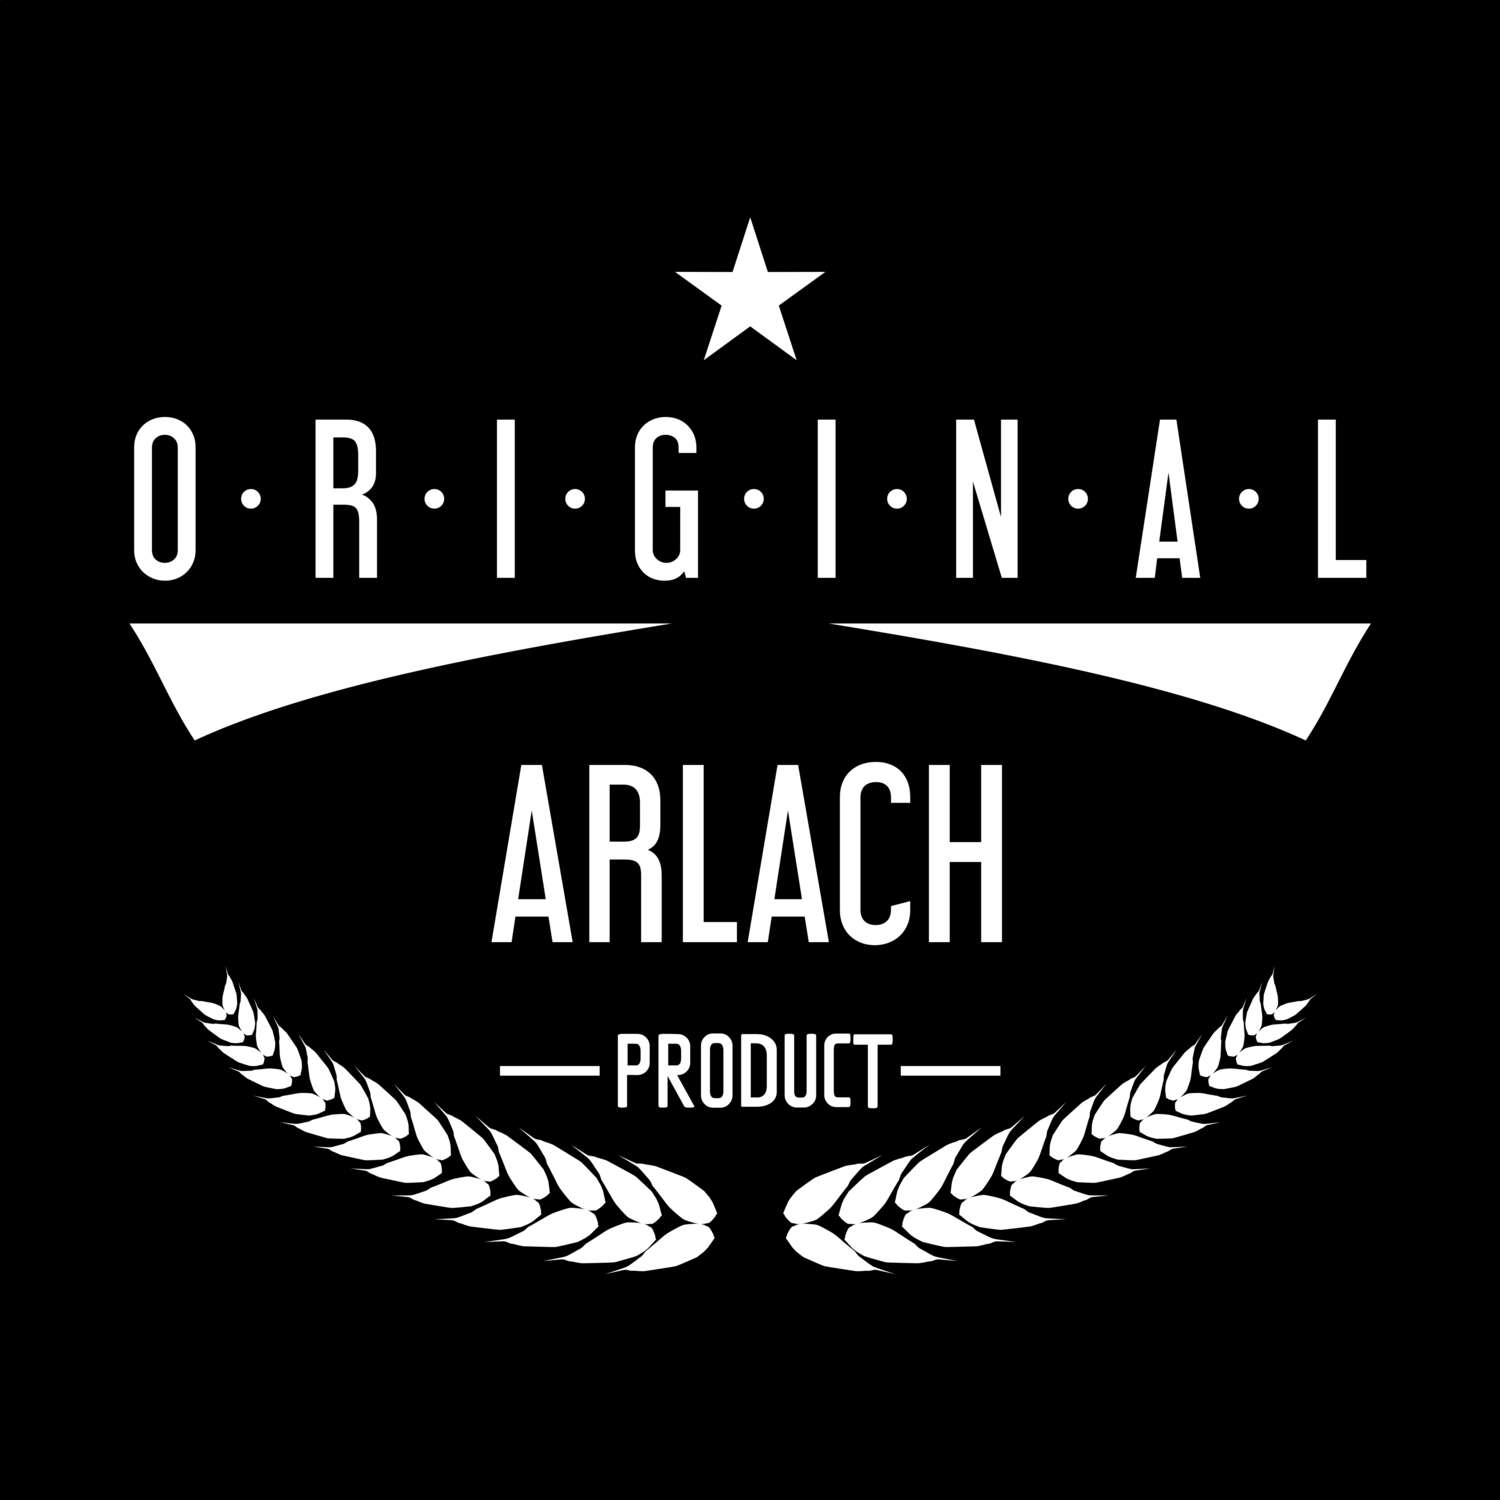 Arlach T-Shirt »Original Product«